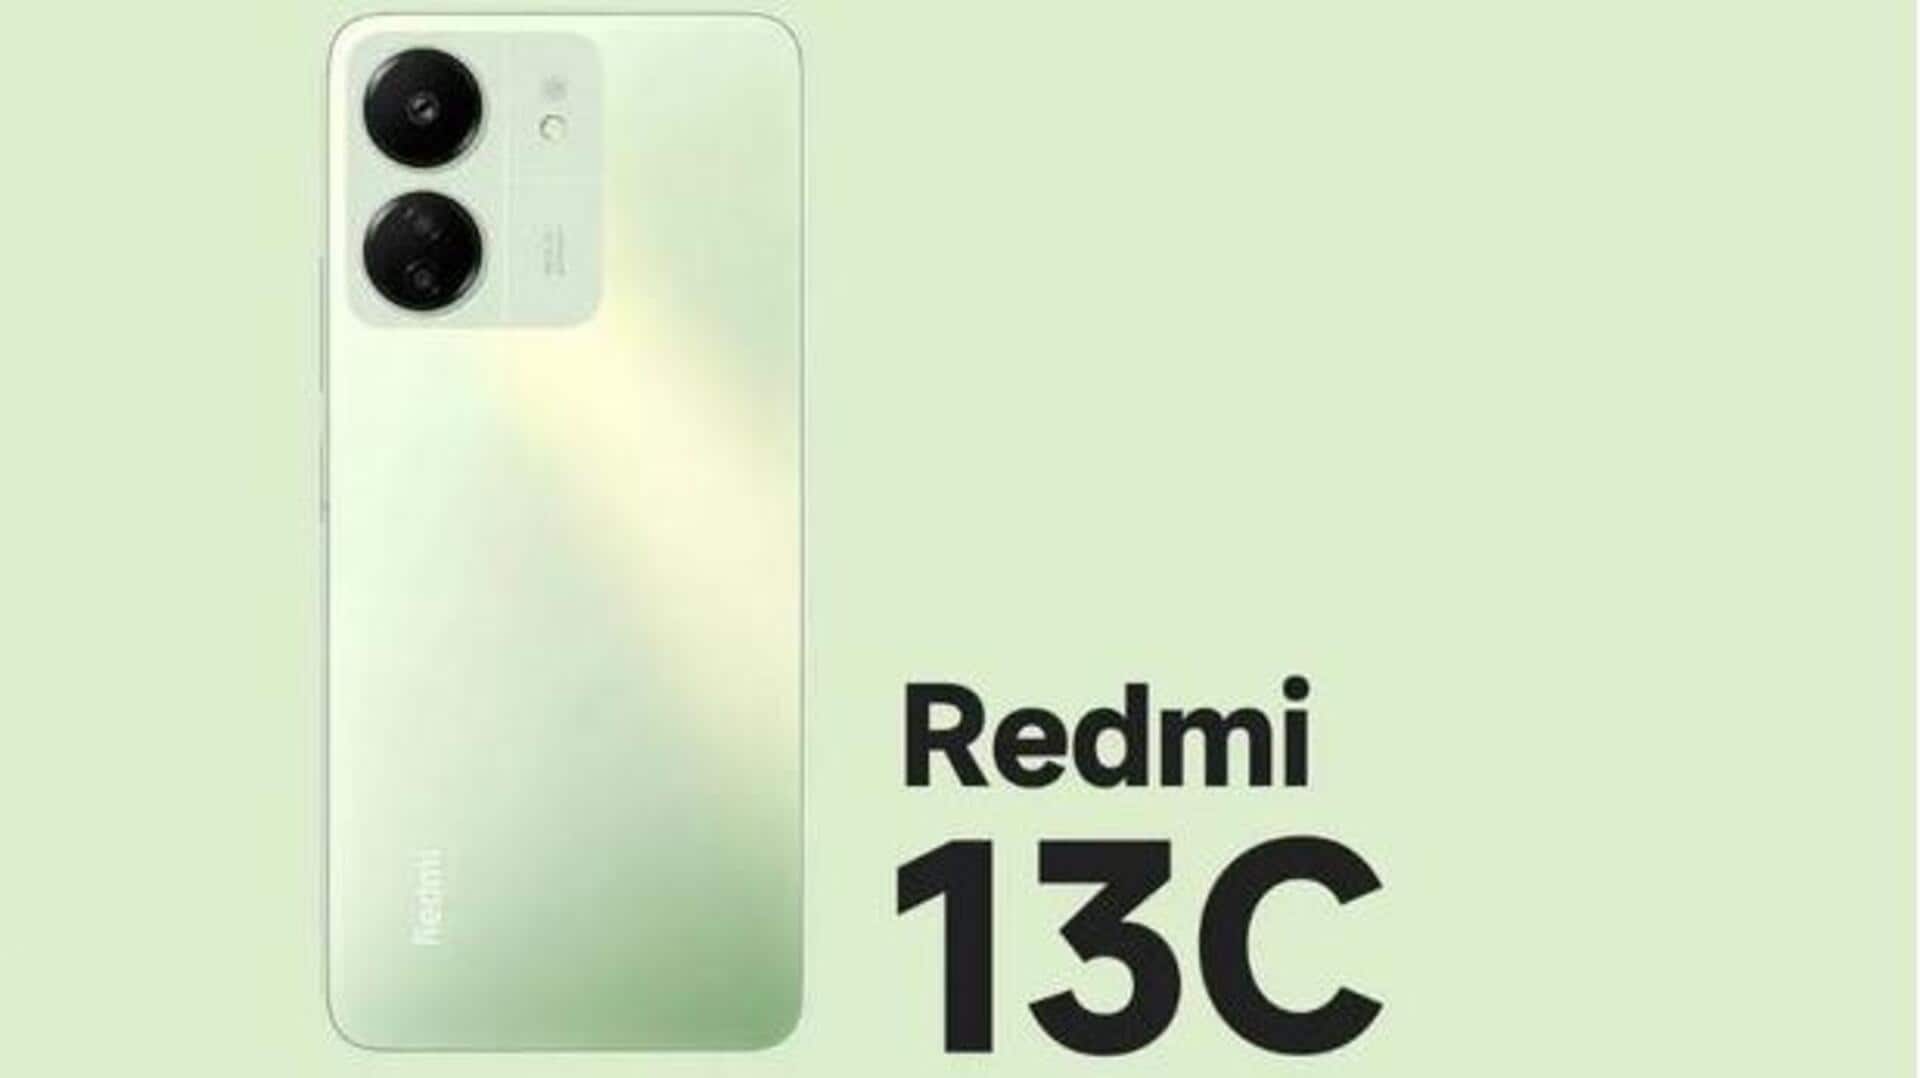 Redmi 13C 5G launch: భారత మార్కెట్లోకి వచ్చేసిన రెడ్ మి 13 సీ 5జీ.. ధర, ఫీచర్లు ఇవే!